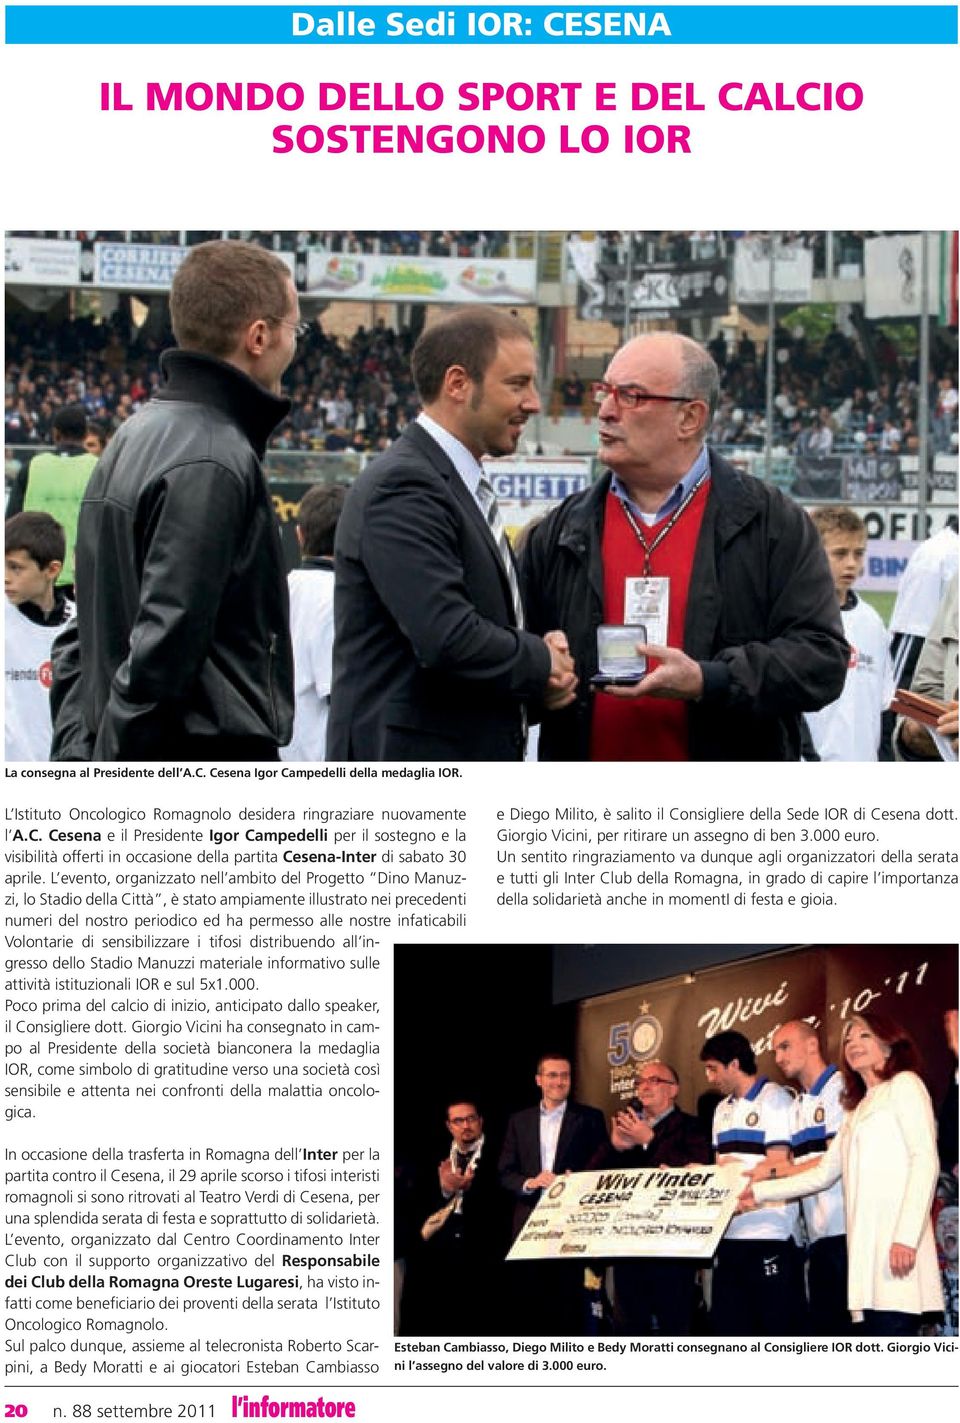 Cesena e il Presidente Igor Campedelli per il sostegno e la visibilità offerti in occasione della partita Cesena-Inter di sabato 30 aprile.